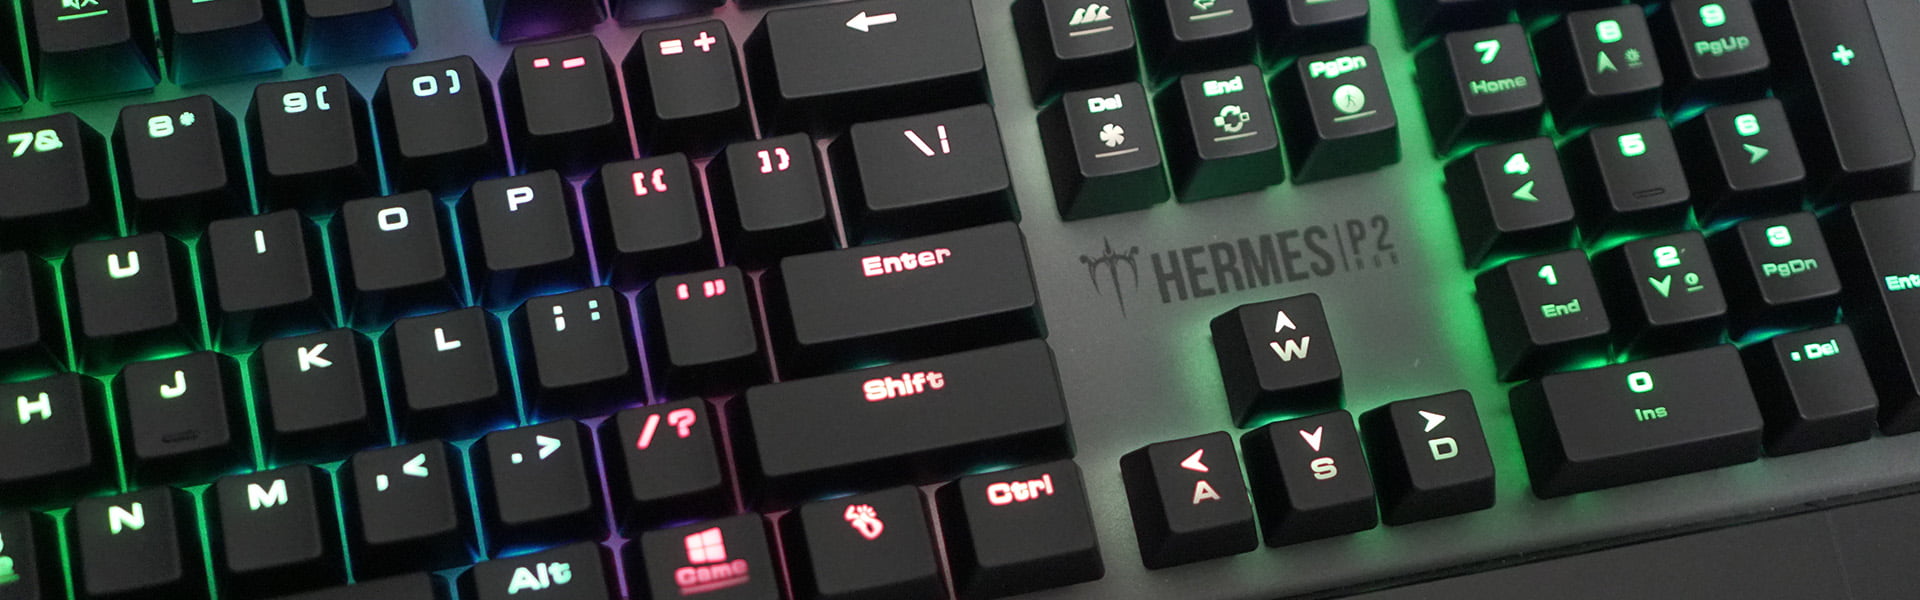 GAMDIAS Hermes P2 Gaming Keyboard Review 12